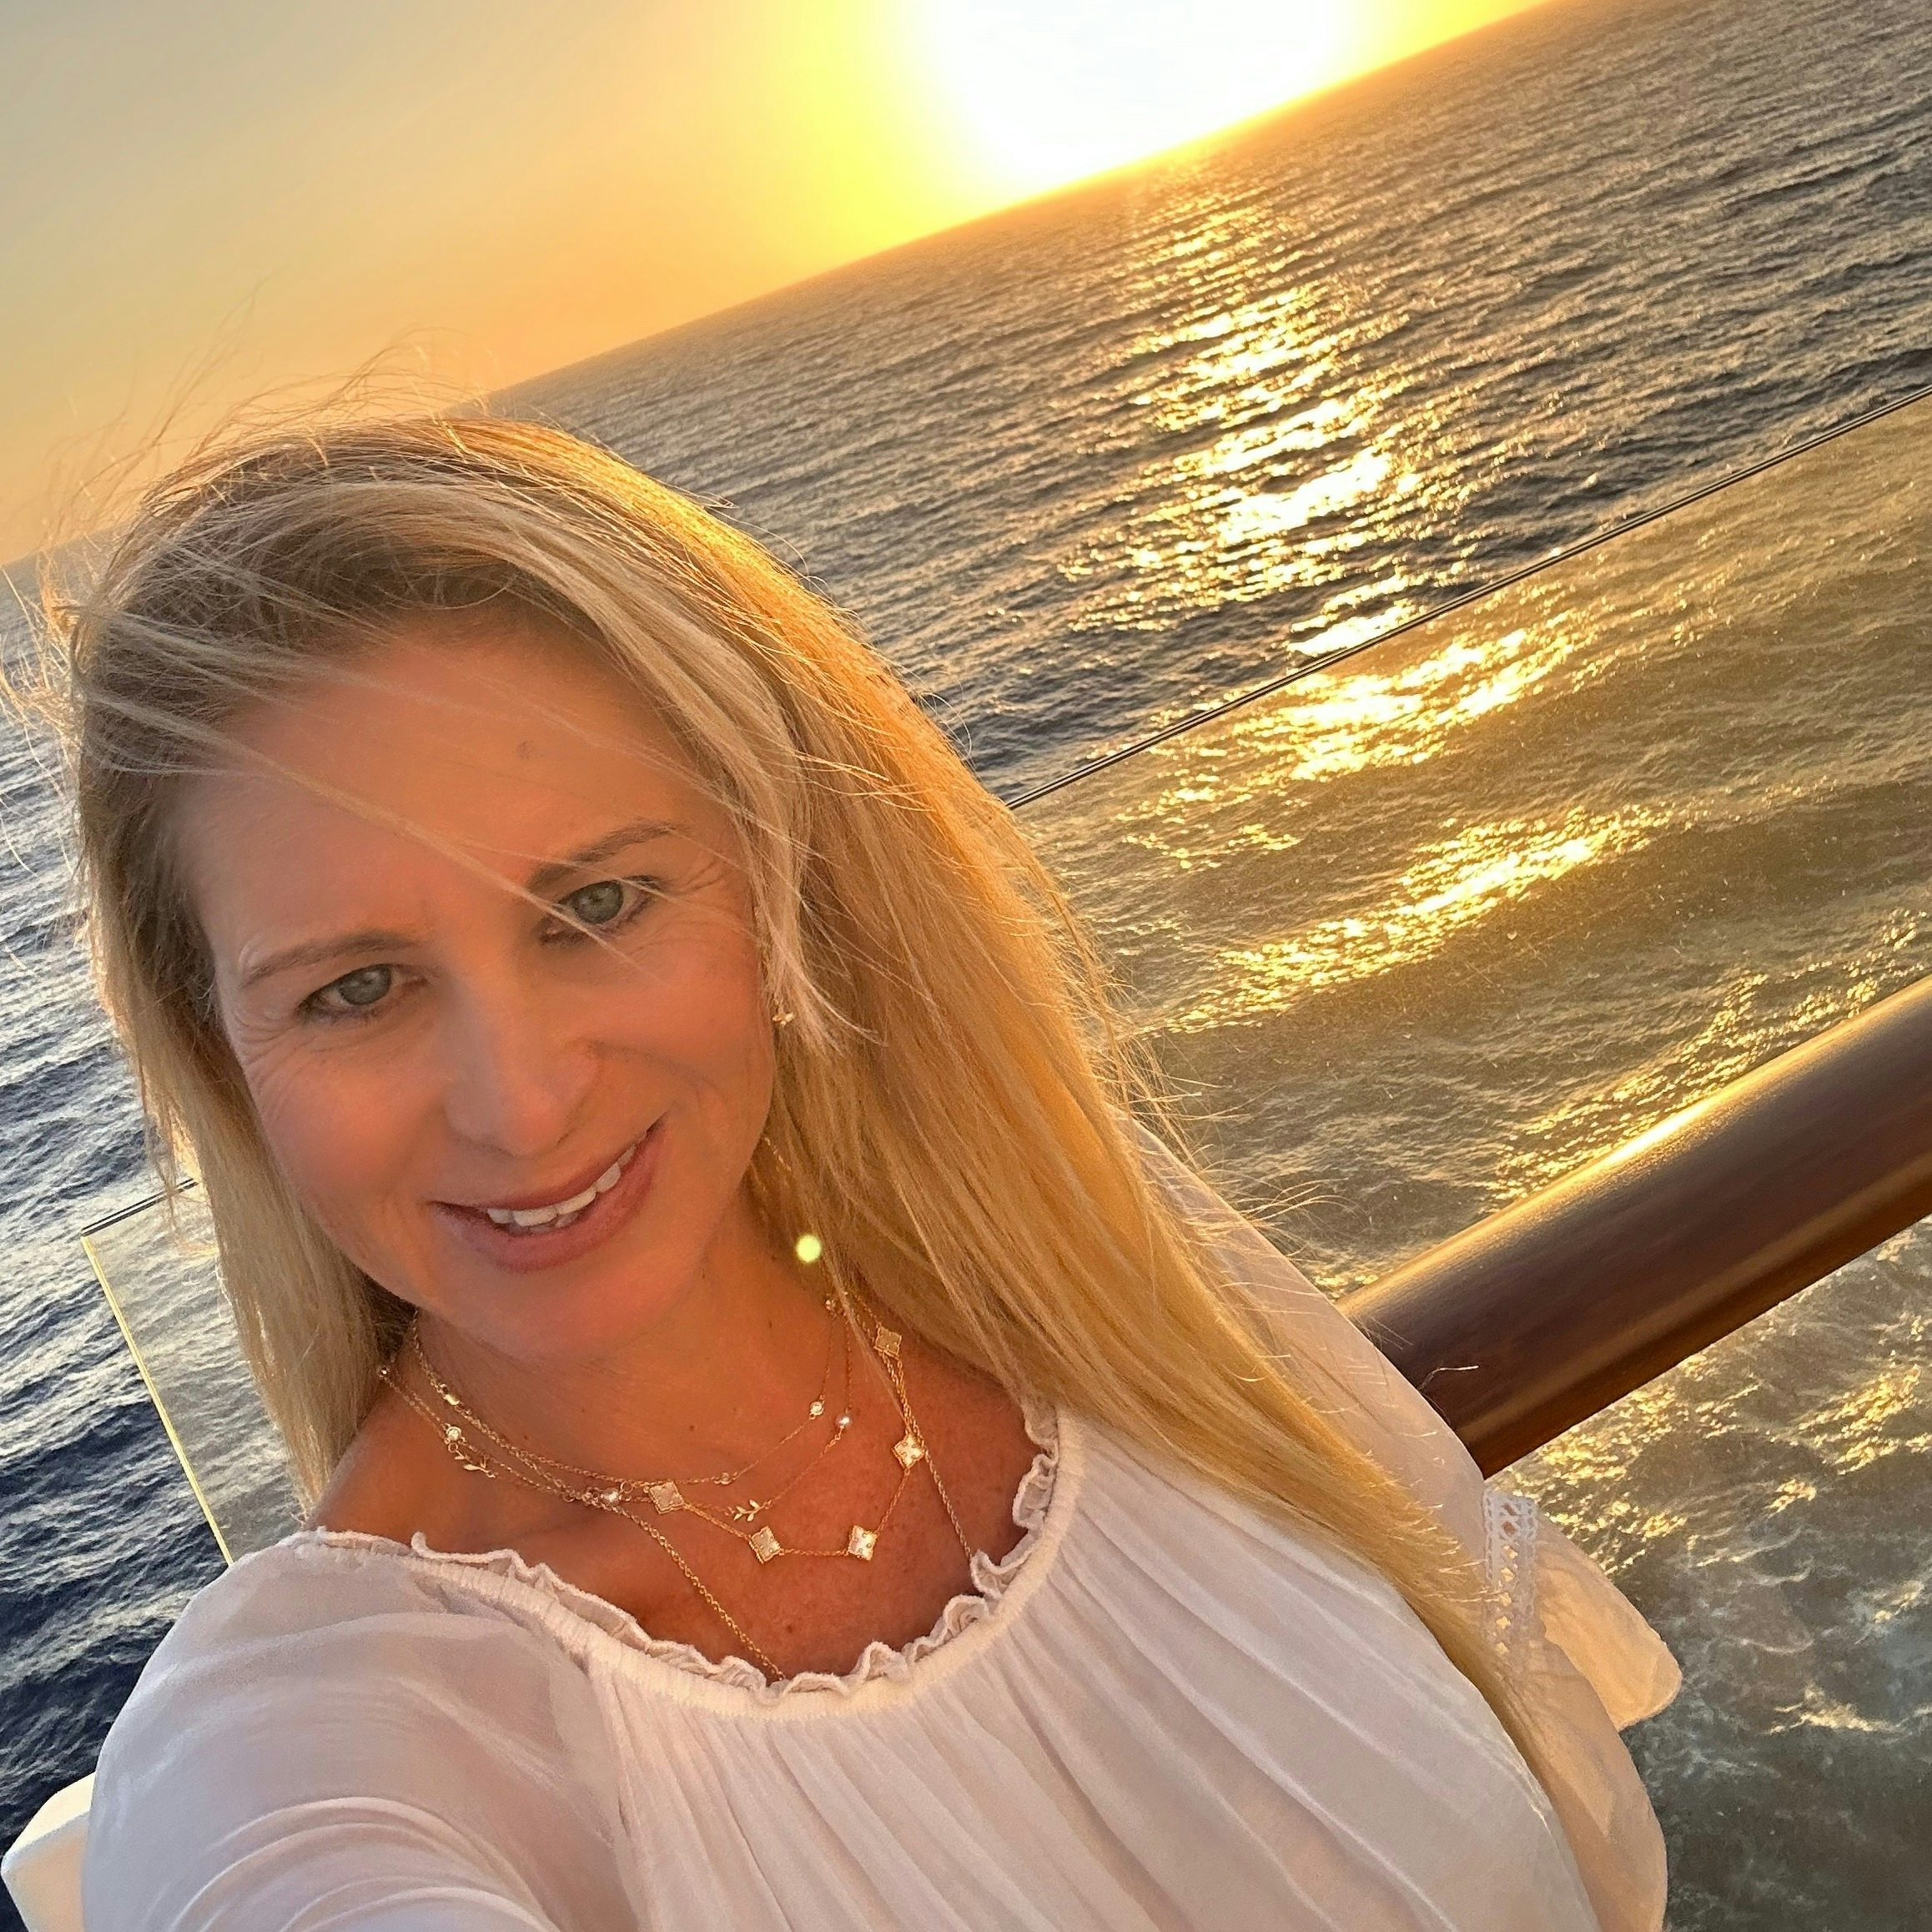 Travel advisor Elaine in white dress posing in front of the ocean at sunset